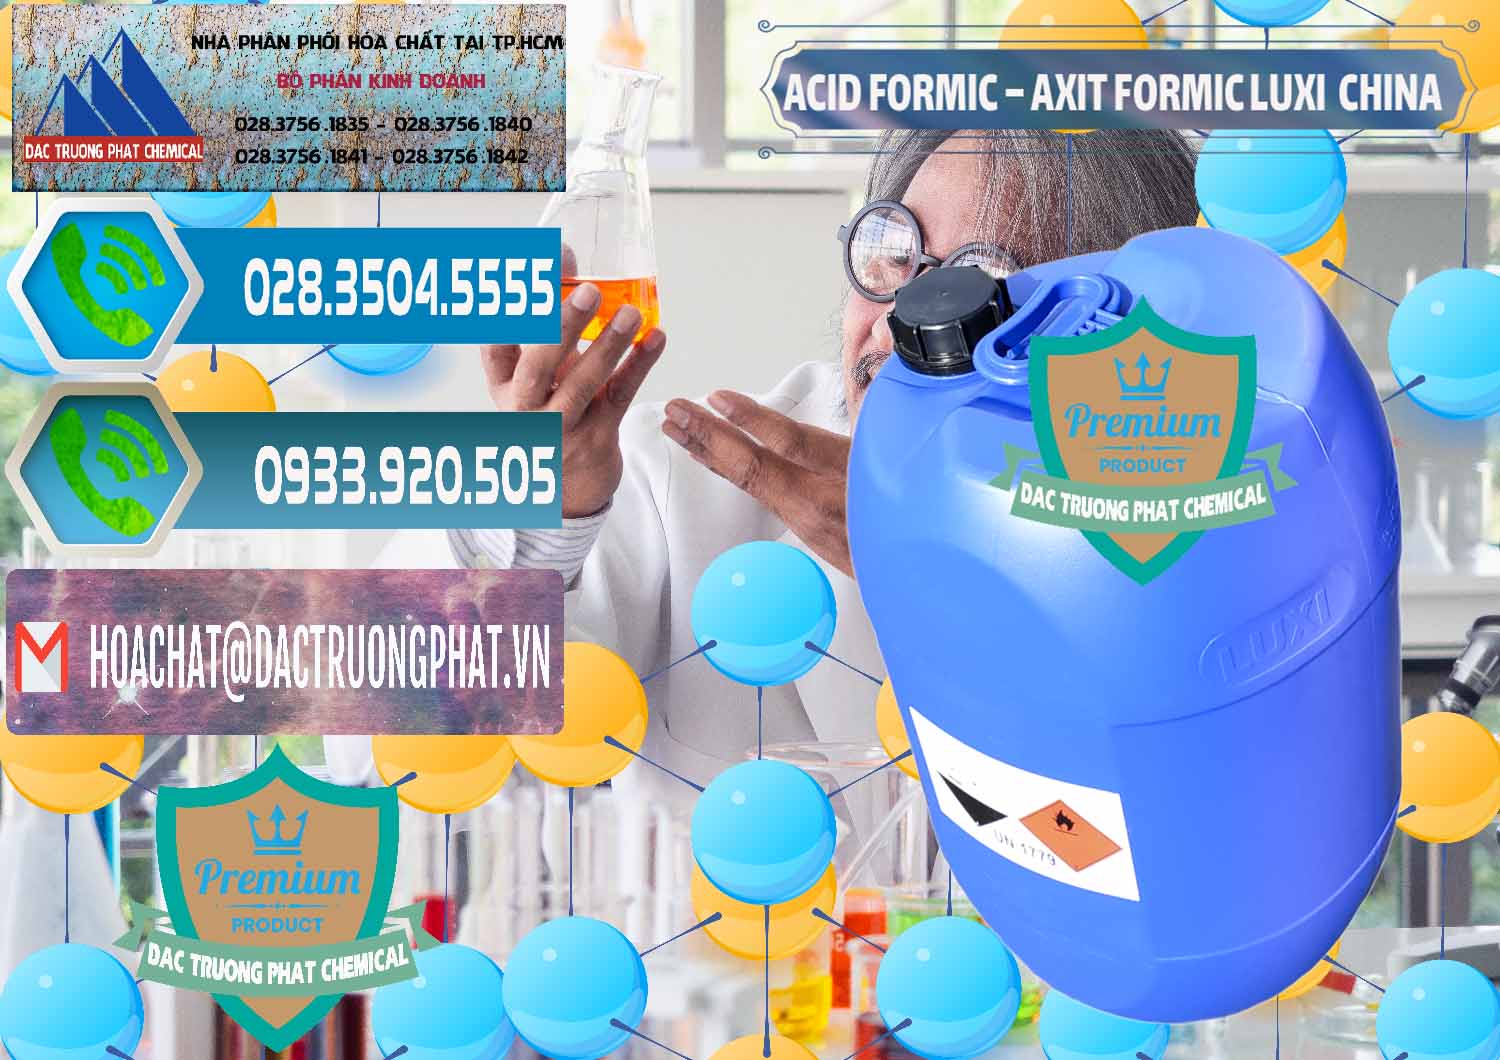 Công ty bán & cung cấp Acid Formic - Axit Formic Luxi Trung Quốc China - 0029 - Chuyên kinh doanh và cung cấp hóa chất tại TP.HCM - congtyhoachat.net